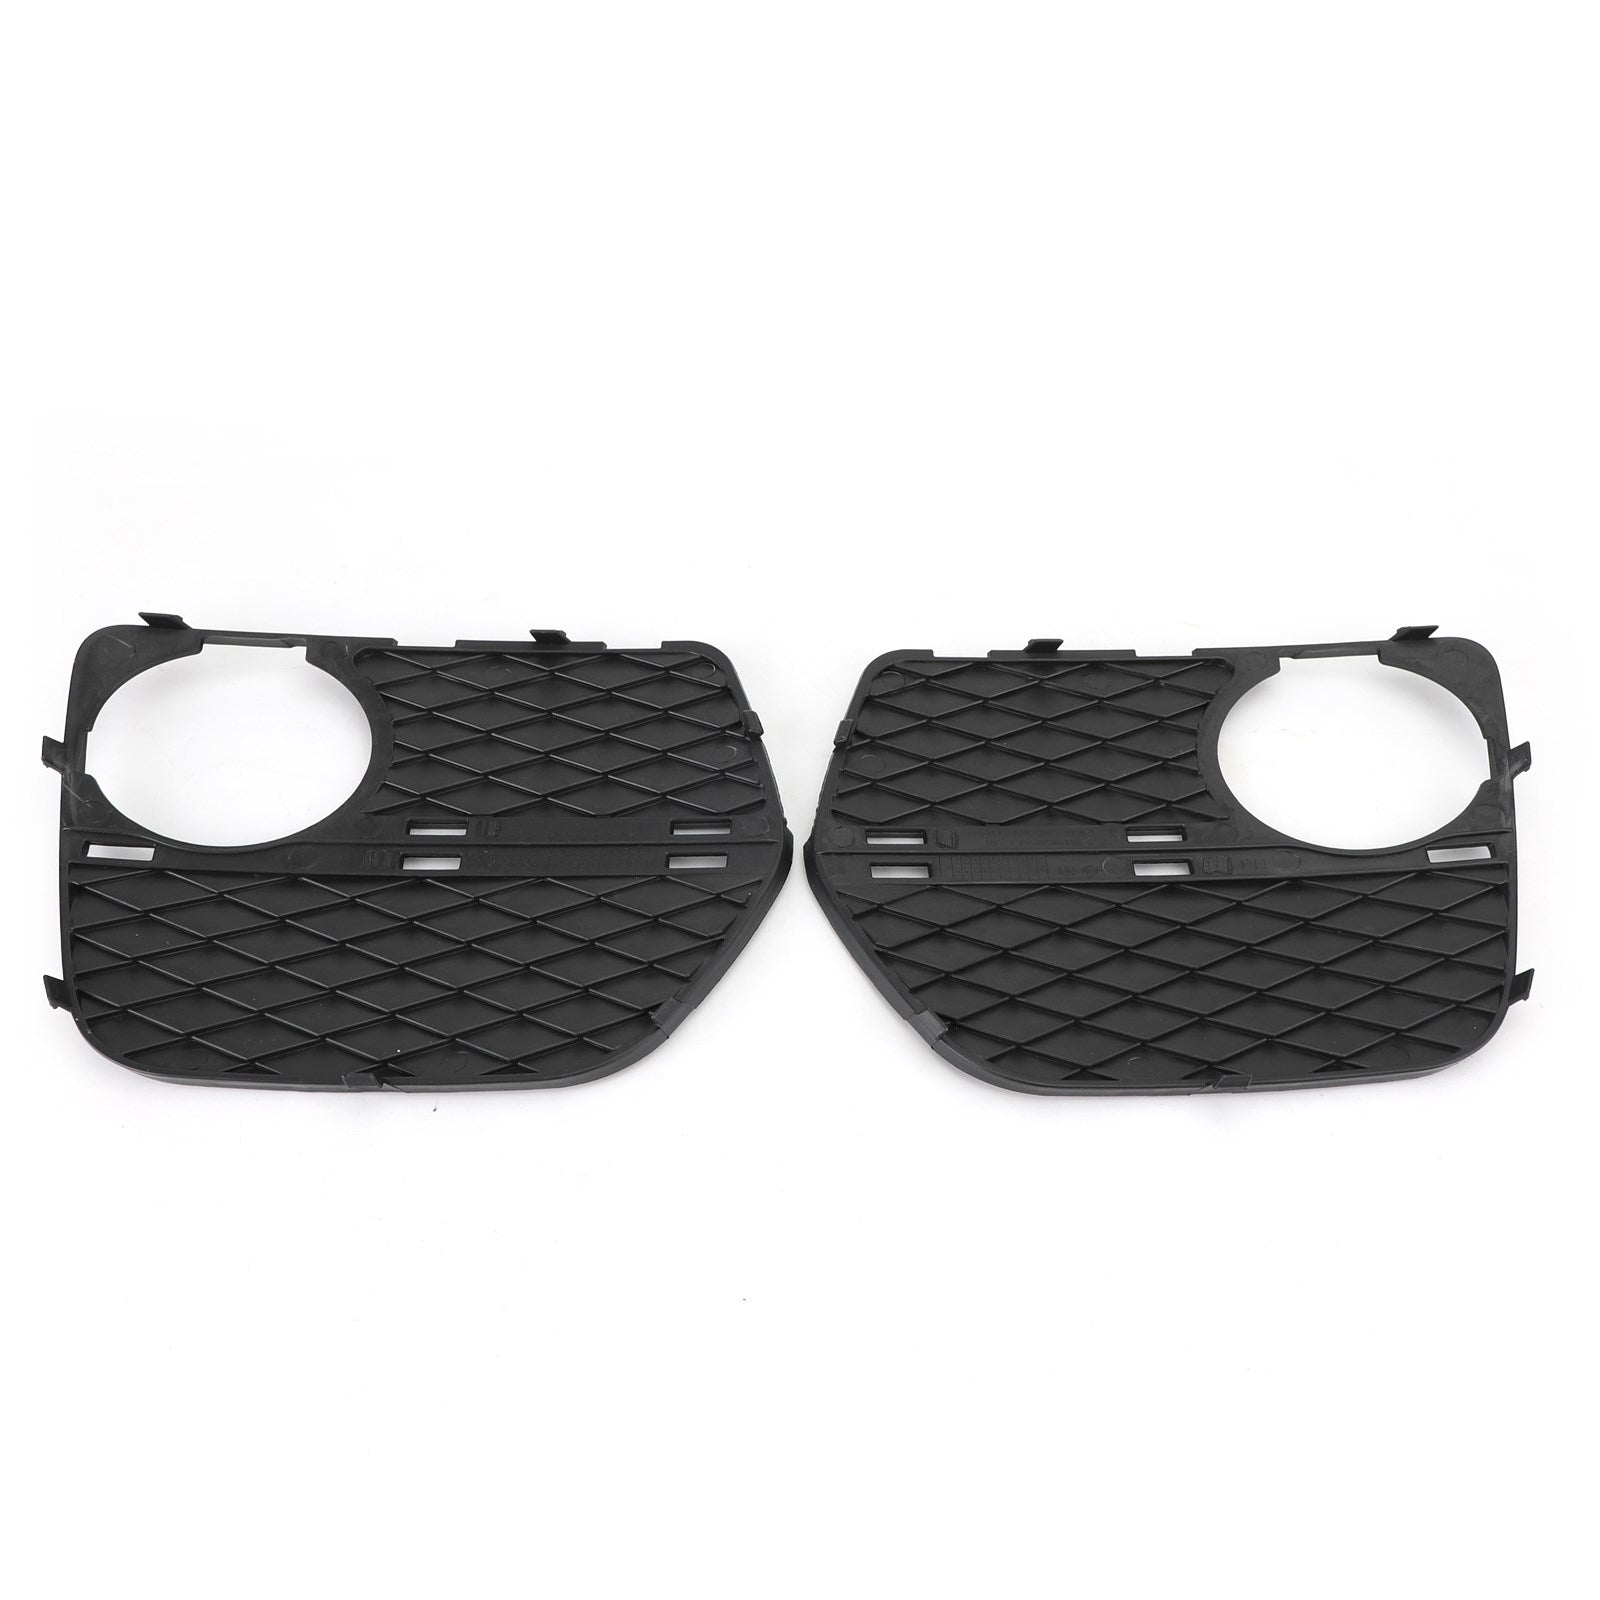 2x pare-chocs avant grille fermée antibrouillard Grille gauche et droite pour BMW X6 2012-2014 générique